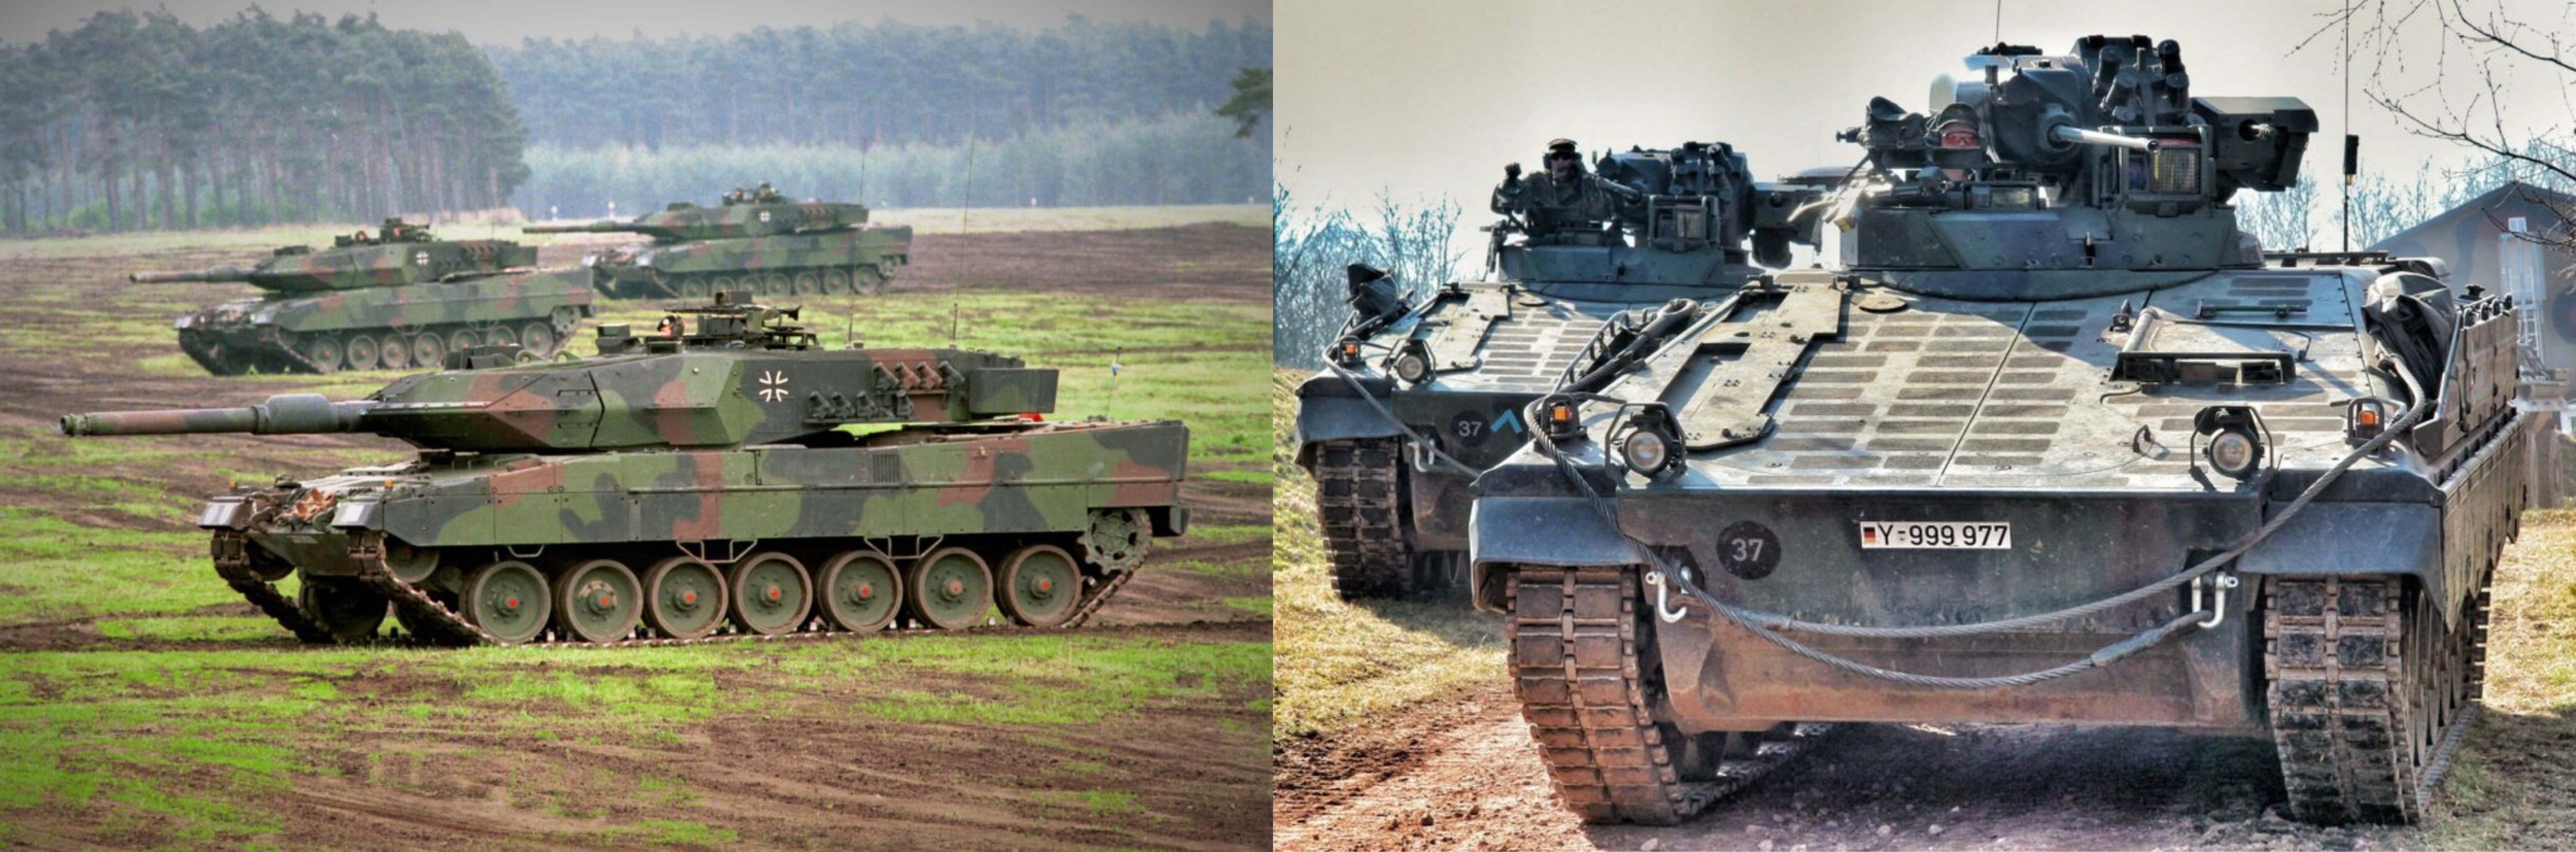 Media: Ukraina ber Tyskland om fler Leopard 2 stridsvagnar och Marder infanteristridsfordon